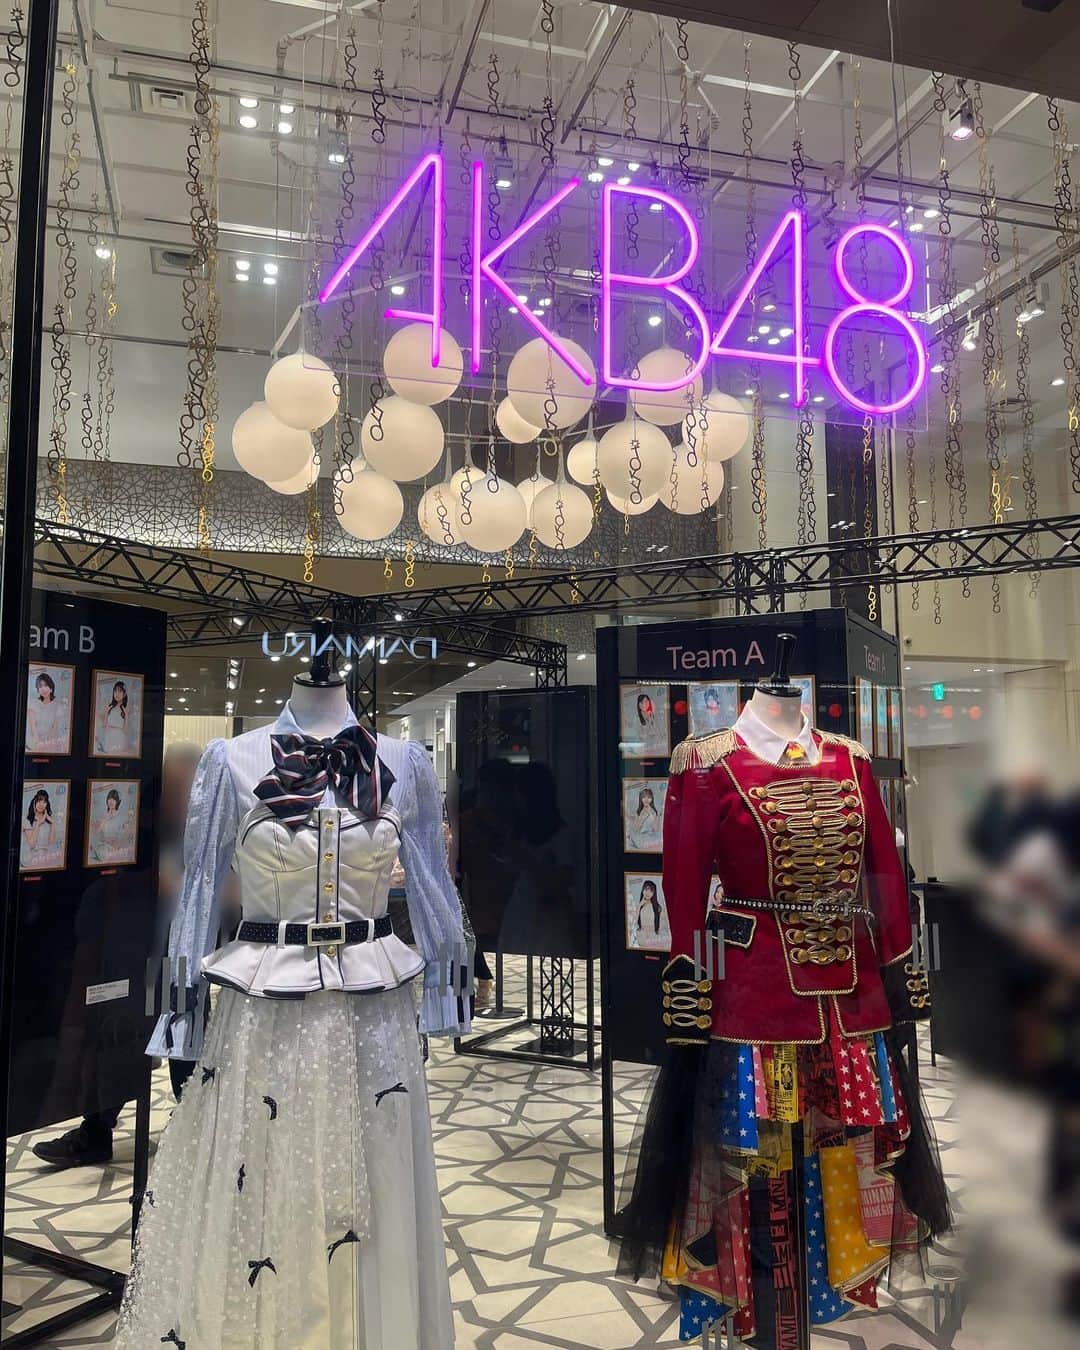 仁藤萌乃のインスタグラム：「大丸東京店で開催中の #AKB48大衣装展 に遊びに行ってきたよ！🤍 オサレカンパニー @osarecompany の衣装は本当に、本当にすごいんだっ🥹 ⁡ 8/8までだから、皆んな急いで！ サインとメッセージ、私も書かせていただきました(恐縮)。 サインはAKB時代でしか使っていない大切なものを、久しぶりに書いたよ☺️えも ⁡ ⁡ ⁡ 下記は感想です_φ(･u･ --------------------- 何度もコンサートで着ていた遠距離ポスターの衣装はエモすぎたし、間近で見たことがなかった衣装も細部まで見れて楽しかったー！感動したーーーー！ ⁡ みんなの名前が入っていたりするオリジナルの生地や、刺繍やボタン、手作業の繊細さも…この距離だからこそ分かるこだわりが沢山なので、是非見に行ってください！(誰) ⁡ ⁡ 歴代の卒業ドレスは、みぃちゃんのやつが特にエモかった…😭 スカートのチェック柄の生地全部が、色んな衣装で使われていたものなの！ 全部に見覚えがあって感動しちゃった…はぁ、素敵だぁ。。 ⁡ ⁡ メンバーそれぞれに似合う形や色の衣装を作ってくださった、とっっっても愛に溢れたオサレカンパニーさんには沢山幸せにしてもらいました。 これからもずっと変わらない大切な記憶です♡ ⁡ 想いが溢れて長文乱文になってしまった…笑 ⁡ しのぶさんとゆいちゃんにも久しぶりに会えて嬉しかった〜🫶心が温まりすぎちゃった。 ありがとうございました🩵 ⁡ ⁡ ⁡#AKB48#オサレカンパニー ⁡」